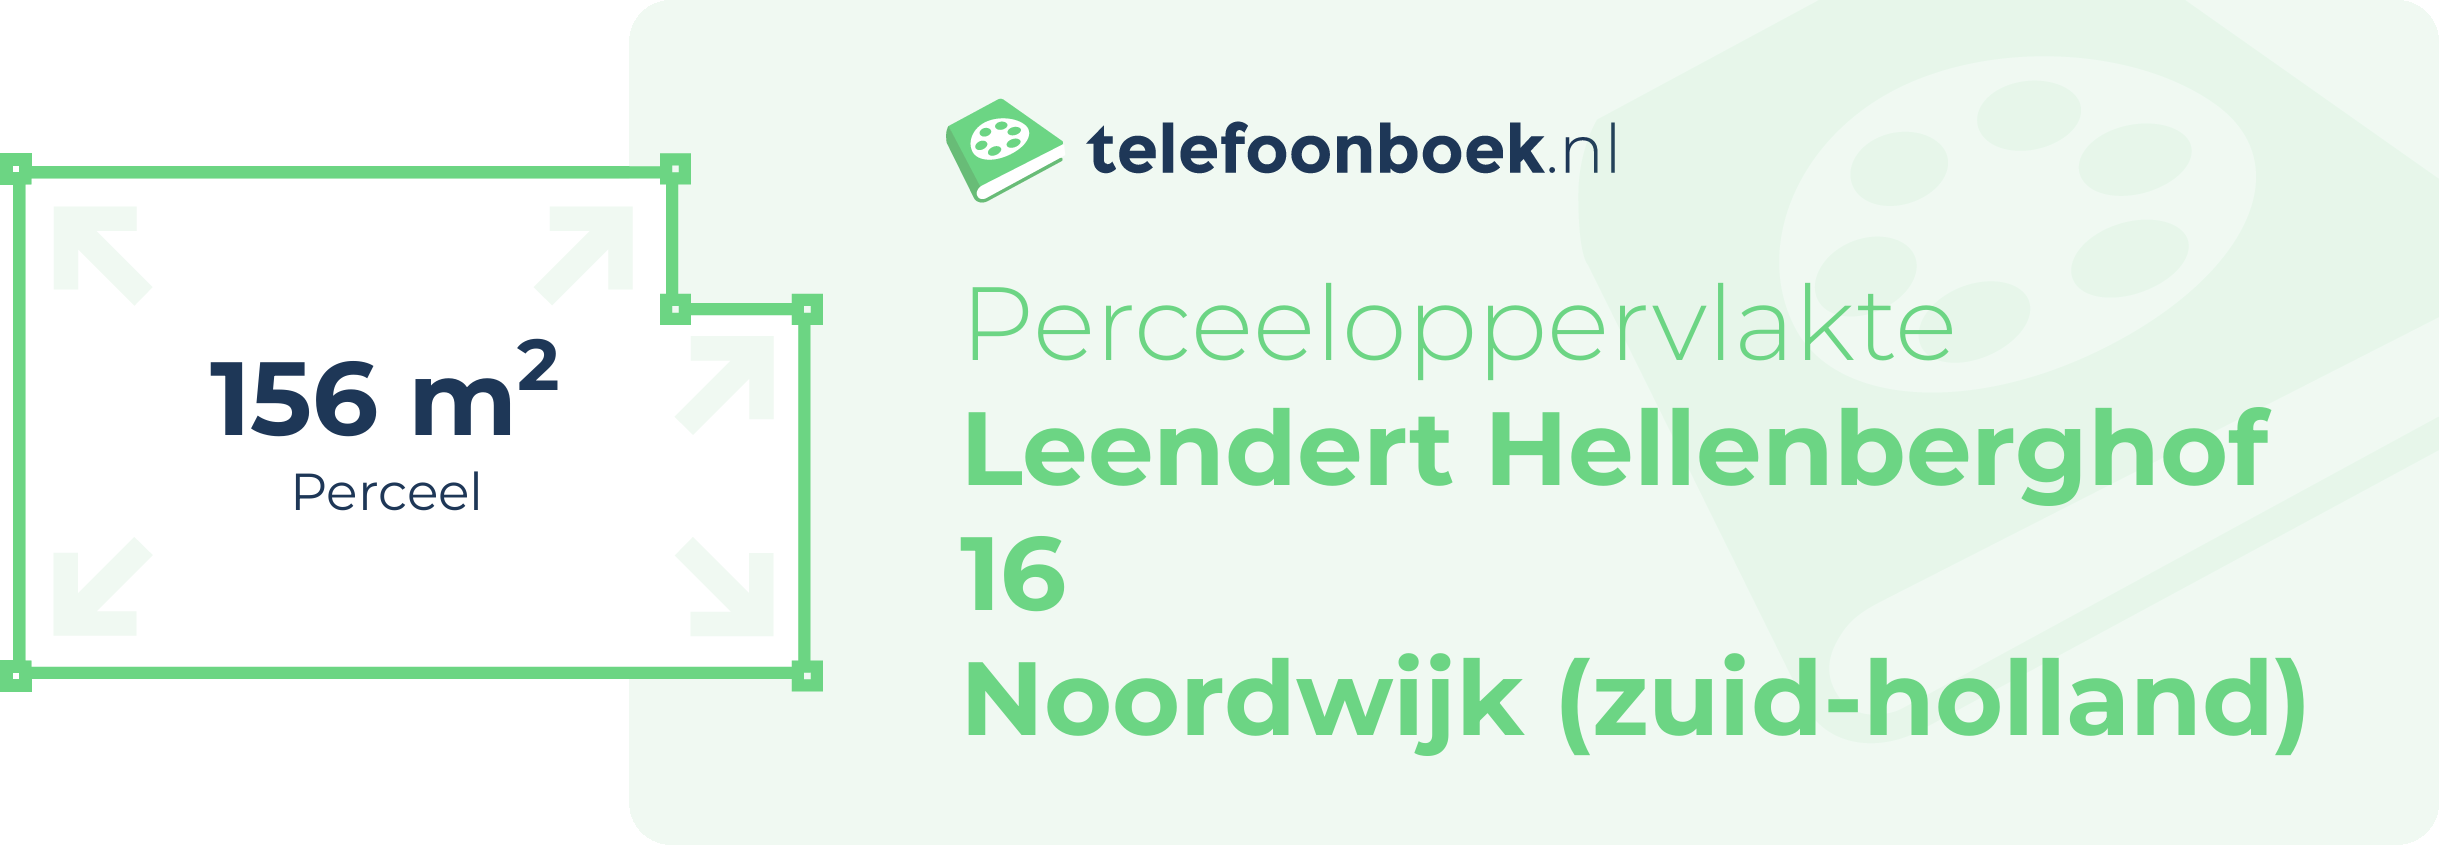 Perceeloppervlakte Leendert Hellenberghof 16 Noordwijk (Zuid-Holland)